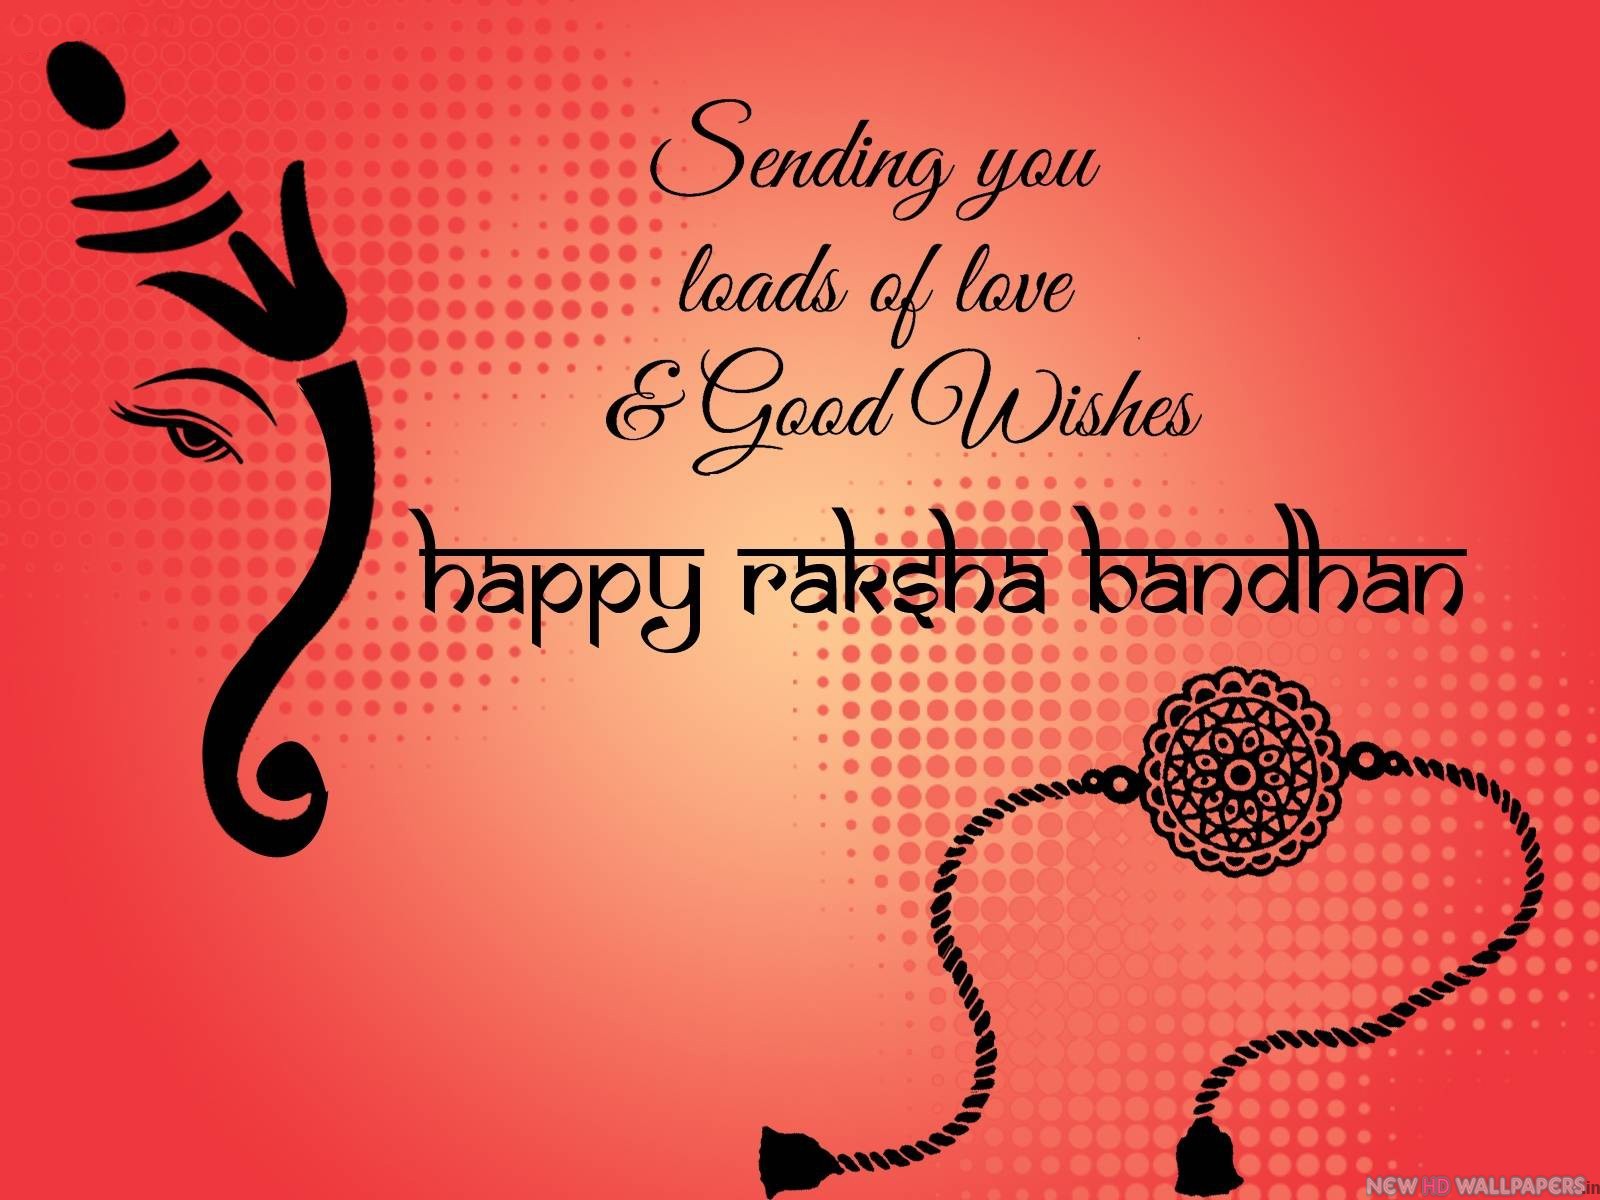 2018}* Rakhi/ Raksha Bandhan Greetings Cards Images Pictures in Hindi